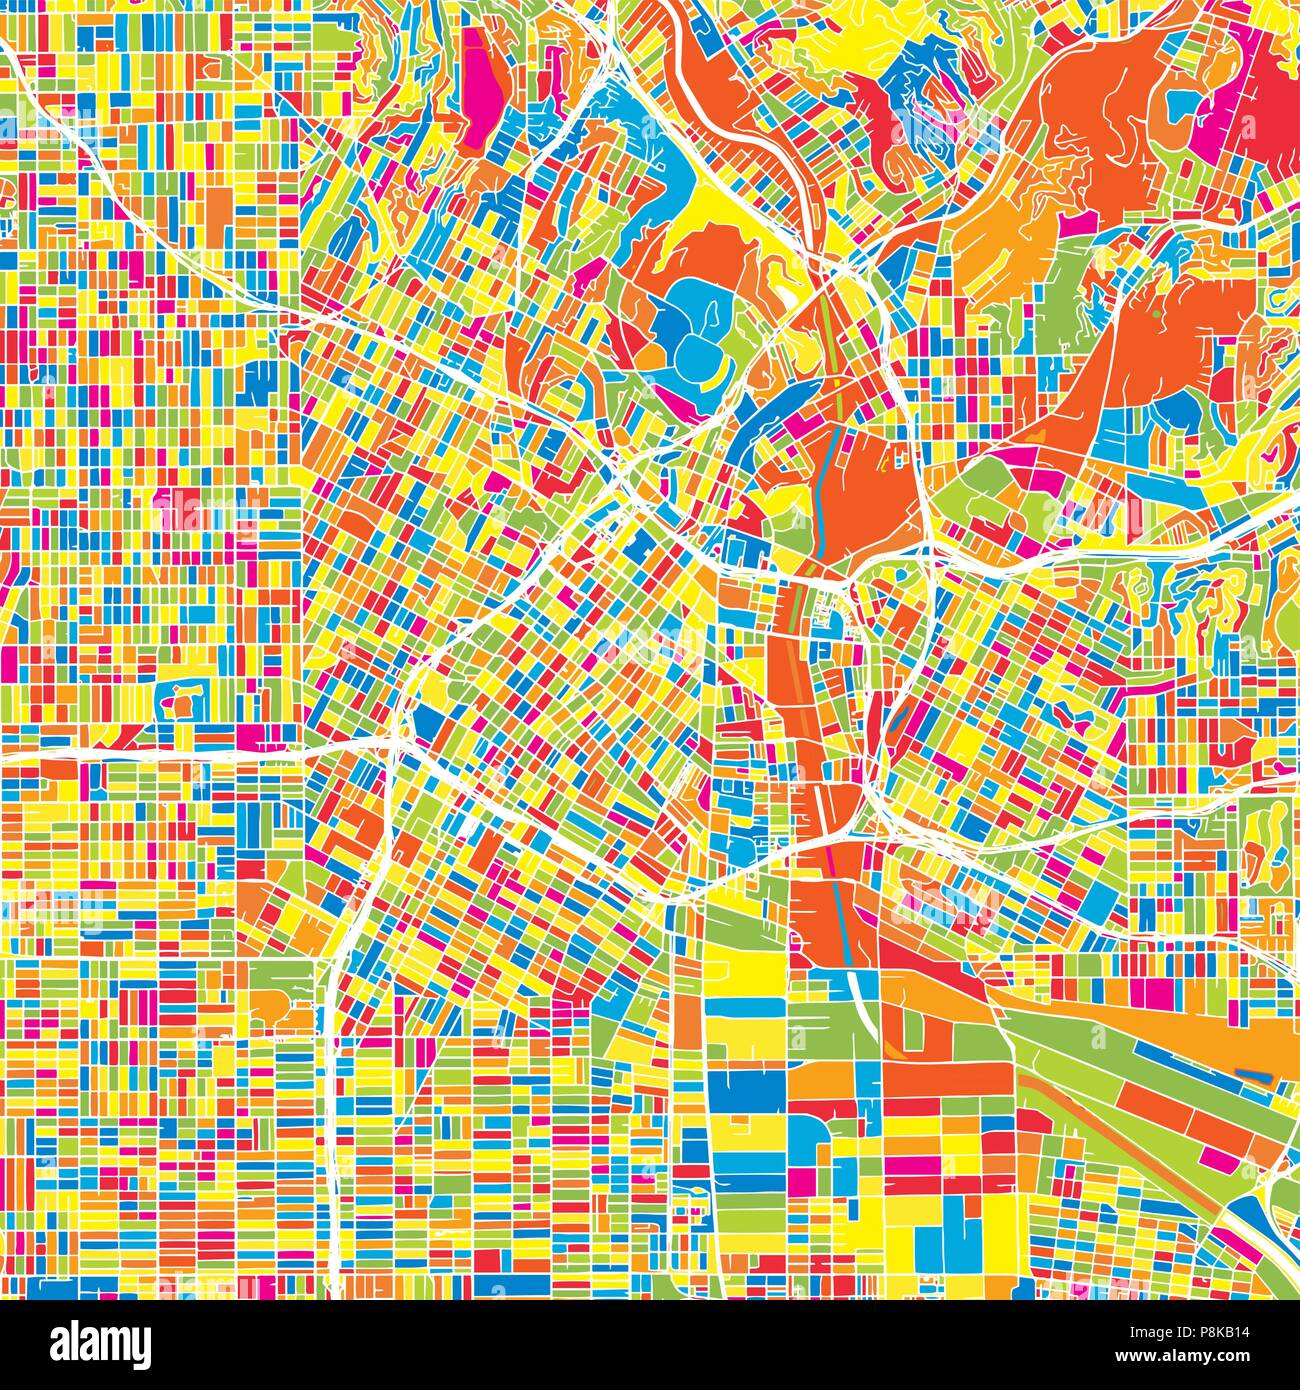 Los Angeles, United States, bunte Vektorkarte. Weiße Straßen, Schienen und Wasser. Helle farbige Wahrzeichen formen. Kunst Muster drucken. Stock Vektor